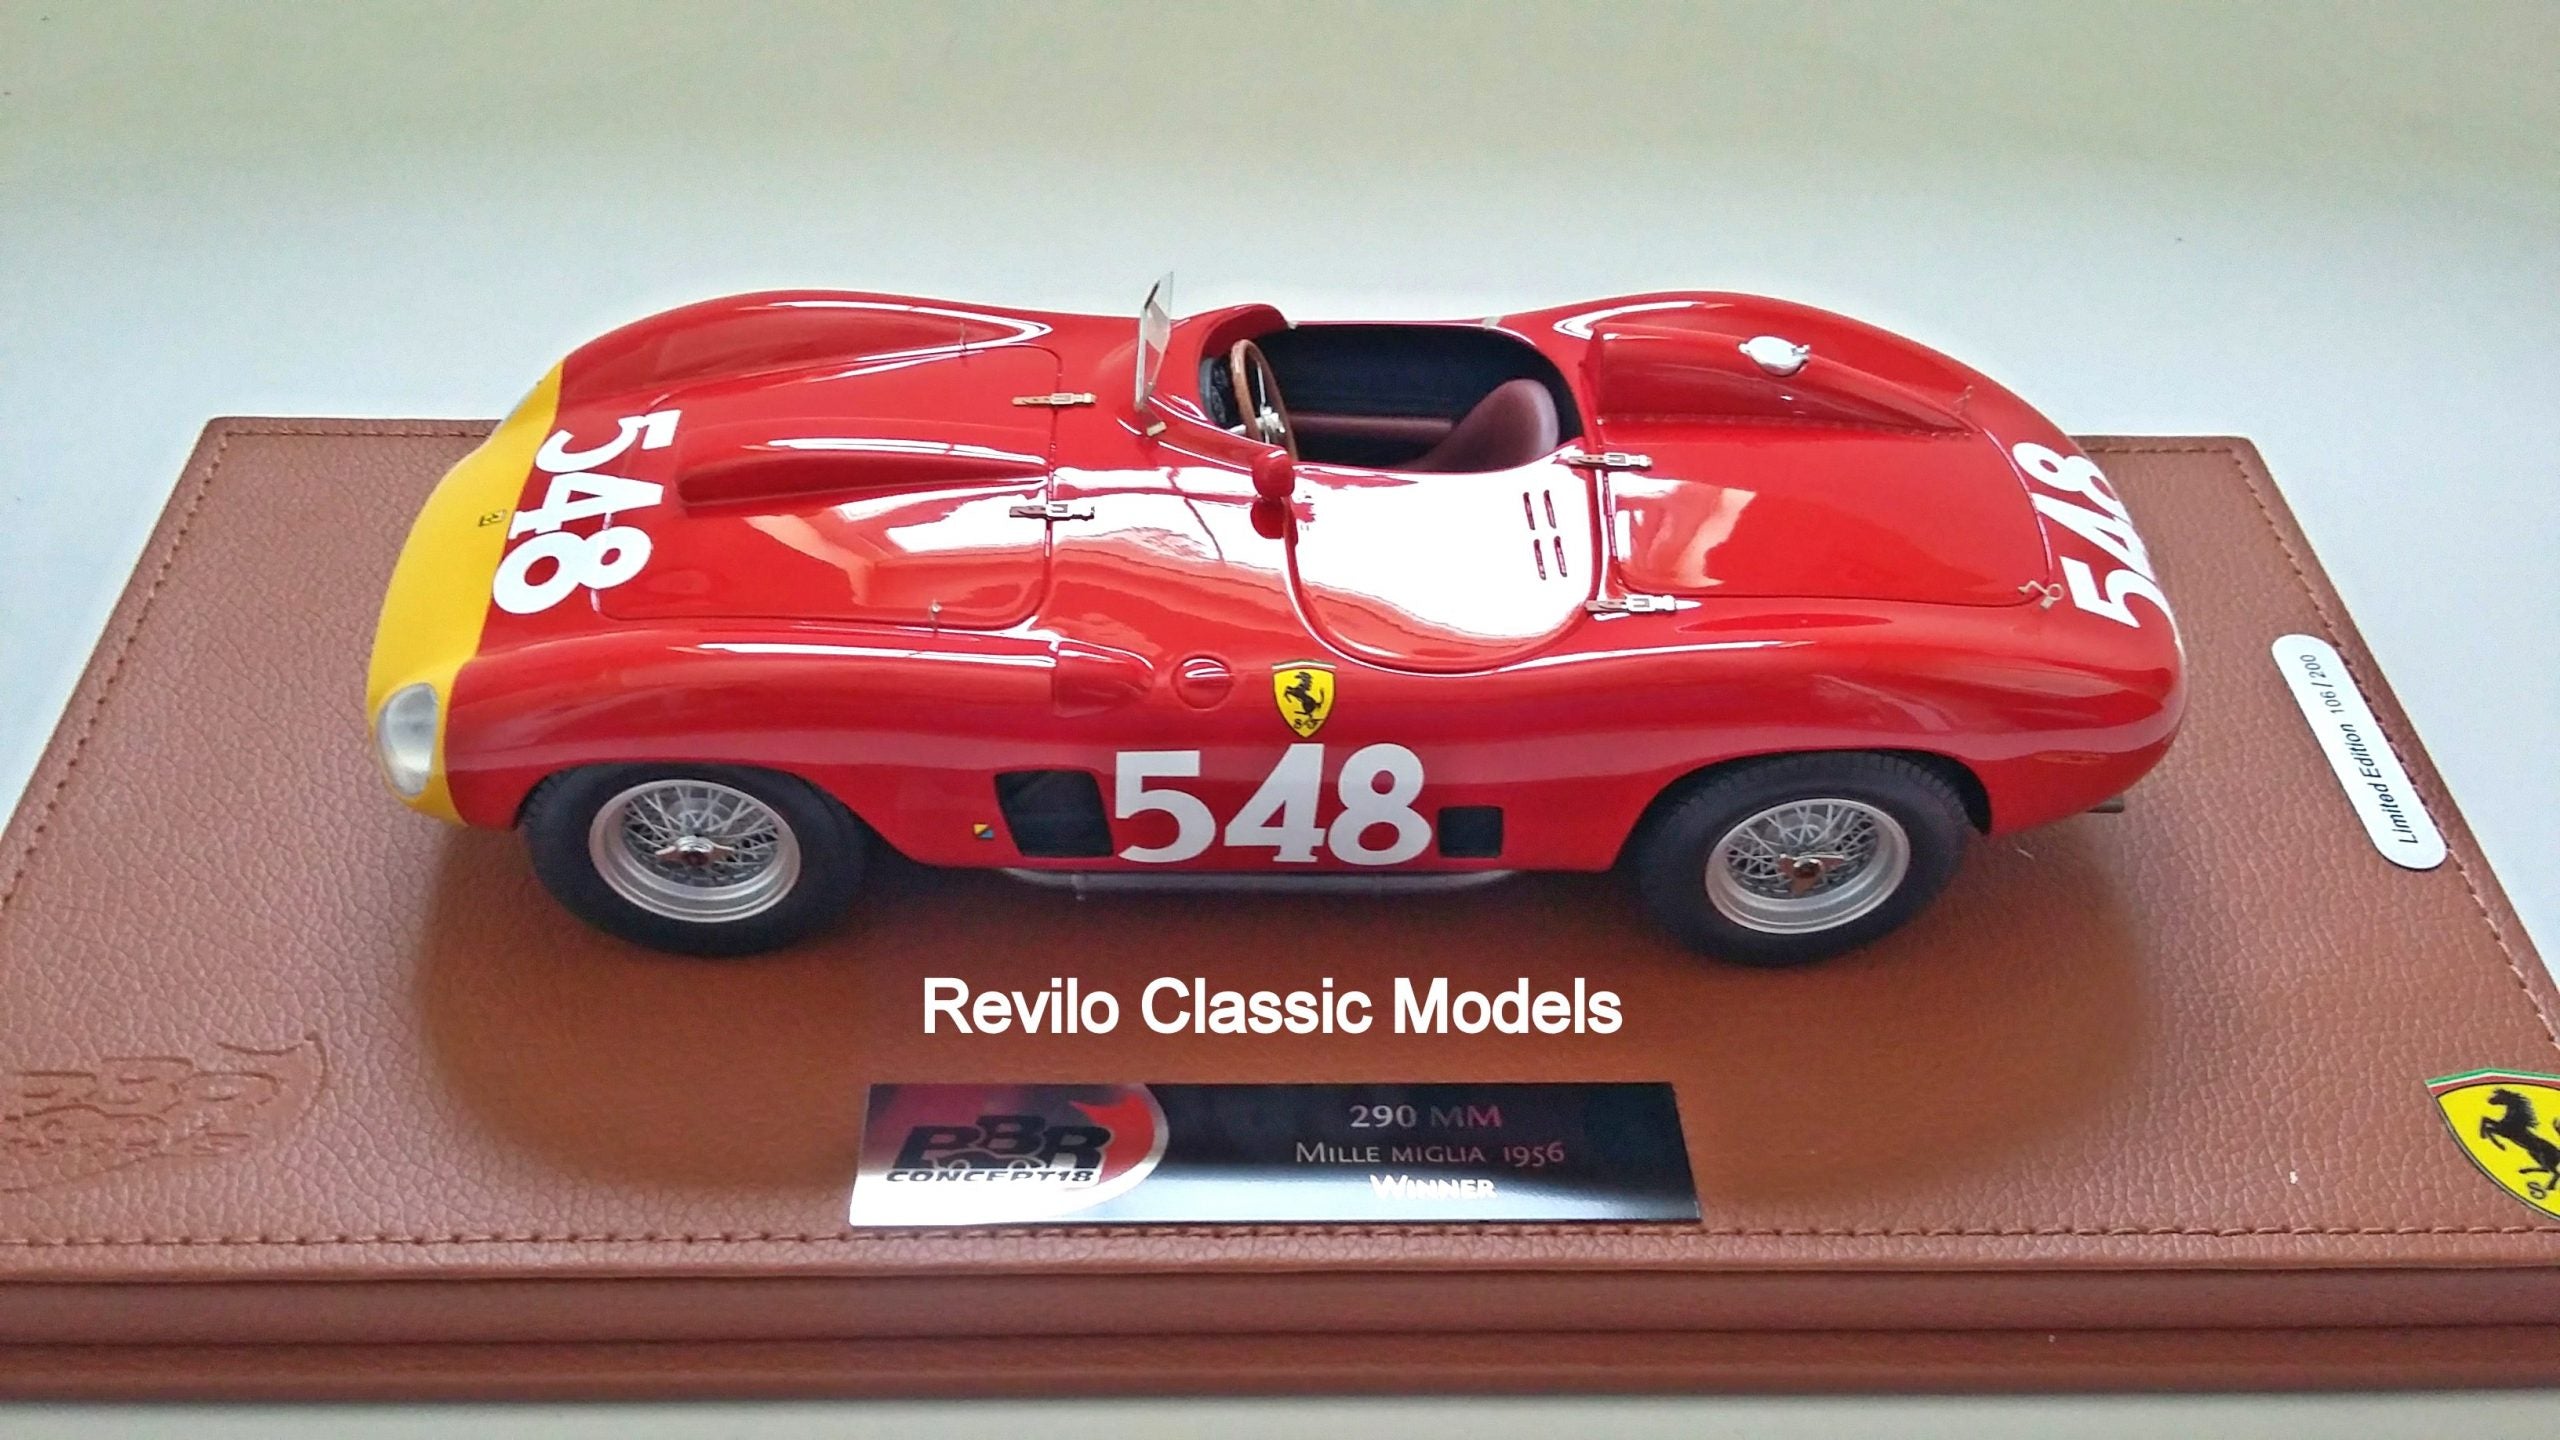 BBR Ferrari 290MM 1956 Mille Miglia winner 1:18 scale